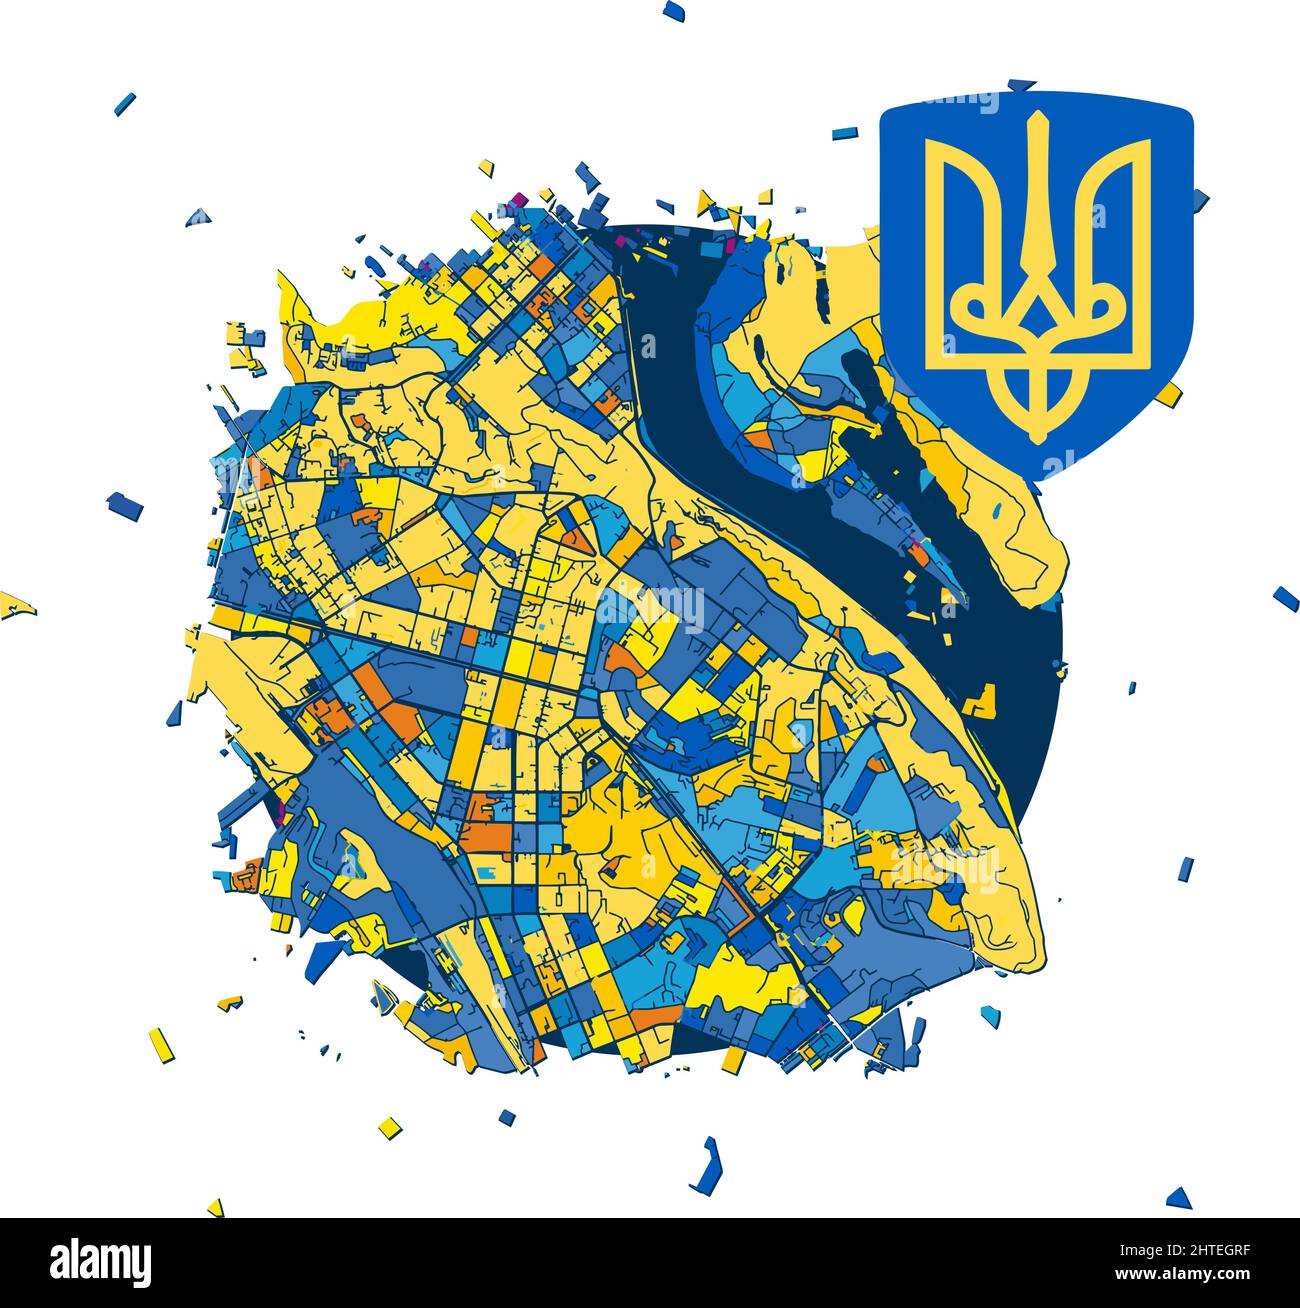 Carte de Kiev et armoiries de Kiev. Save Ukraine concept. Vecteur ukrainien symbole, icône, bouton.-SupplementalCategories+=Images Illustration de Vecteur